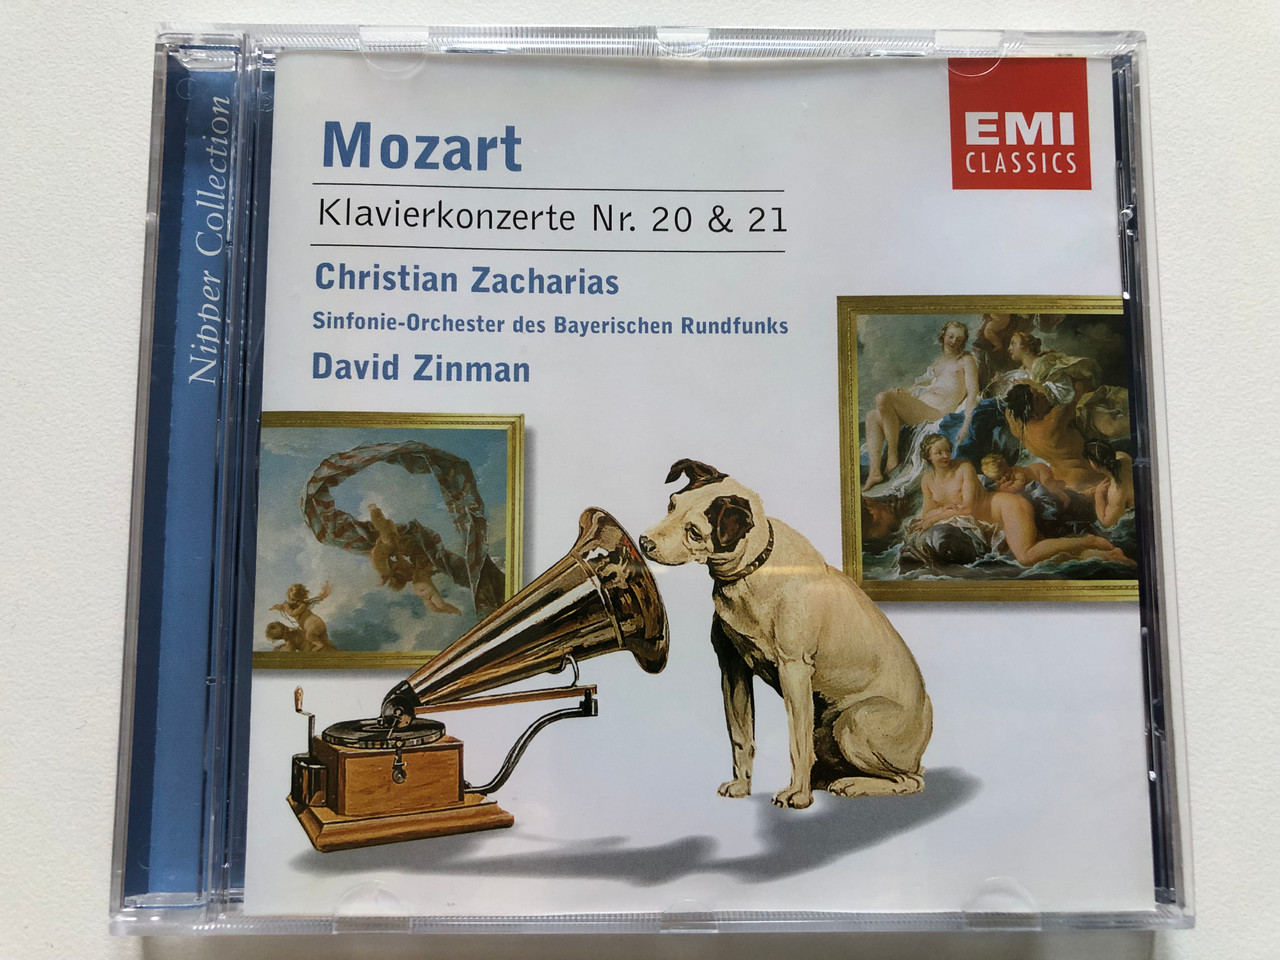 https://cdn10.bigcommerce.com/s-62bdpkt7pb/products/0/images/307985/Mozart_Klavierkonzerte_Nr._20_21_-_Christian_Zacharias_Sinfonie-Orchester_des_Bayerischen_Rundfunks_David_Zinman_EMI_Classics_Audio_CD_2001_724357467629_1__75890.1698916654.1280.1280.JPG?c=2